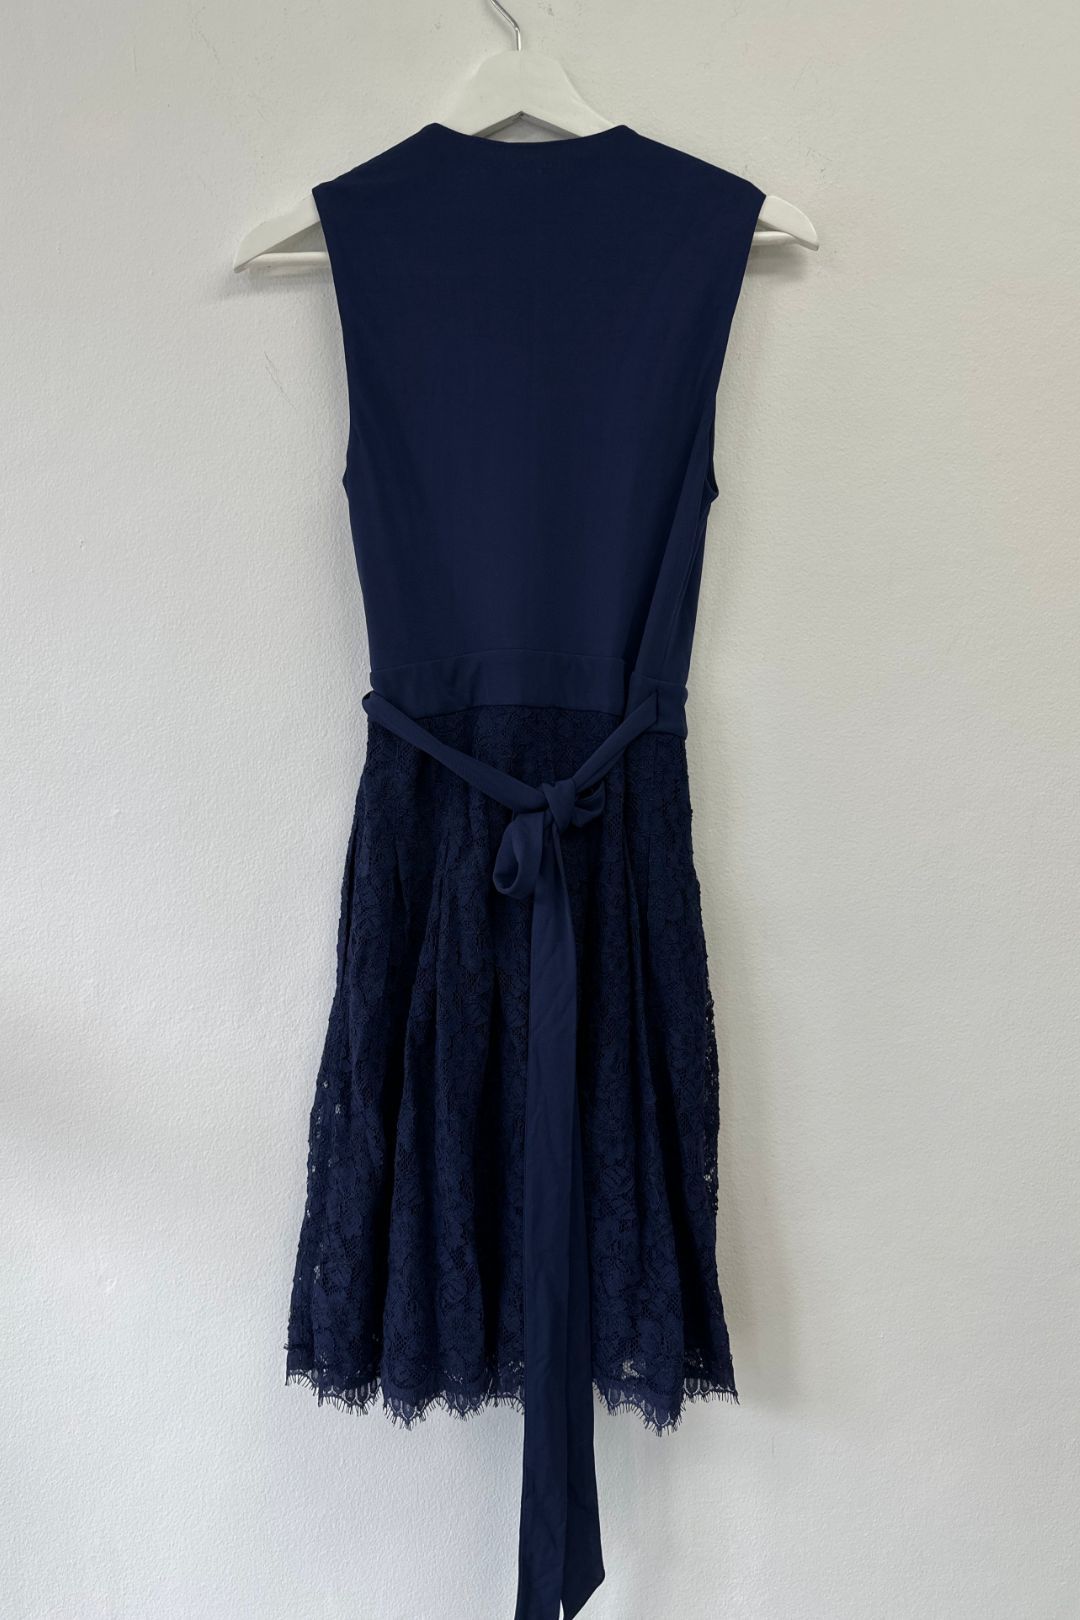 Diane Von Furstenberg - Stretch Lace Blue Wrap Dress